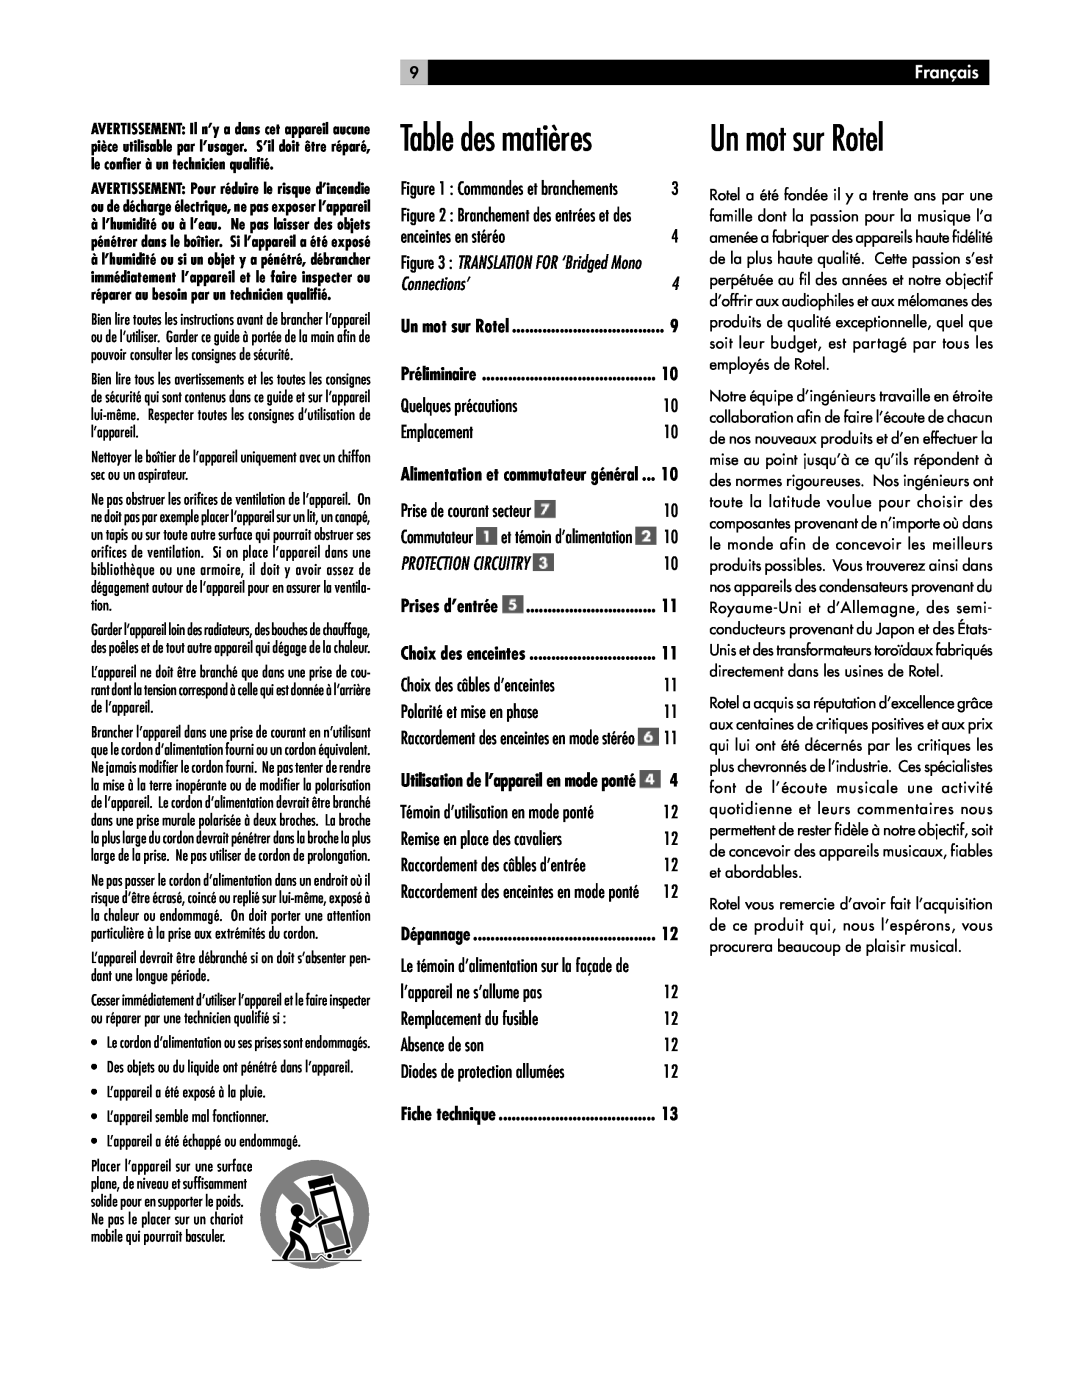 Rotel RB-1070 owner manual Table des matières, Un mot sur Rotel, Français, Connections’, Protection Circuitry 